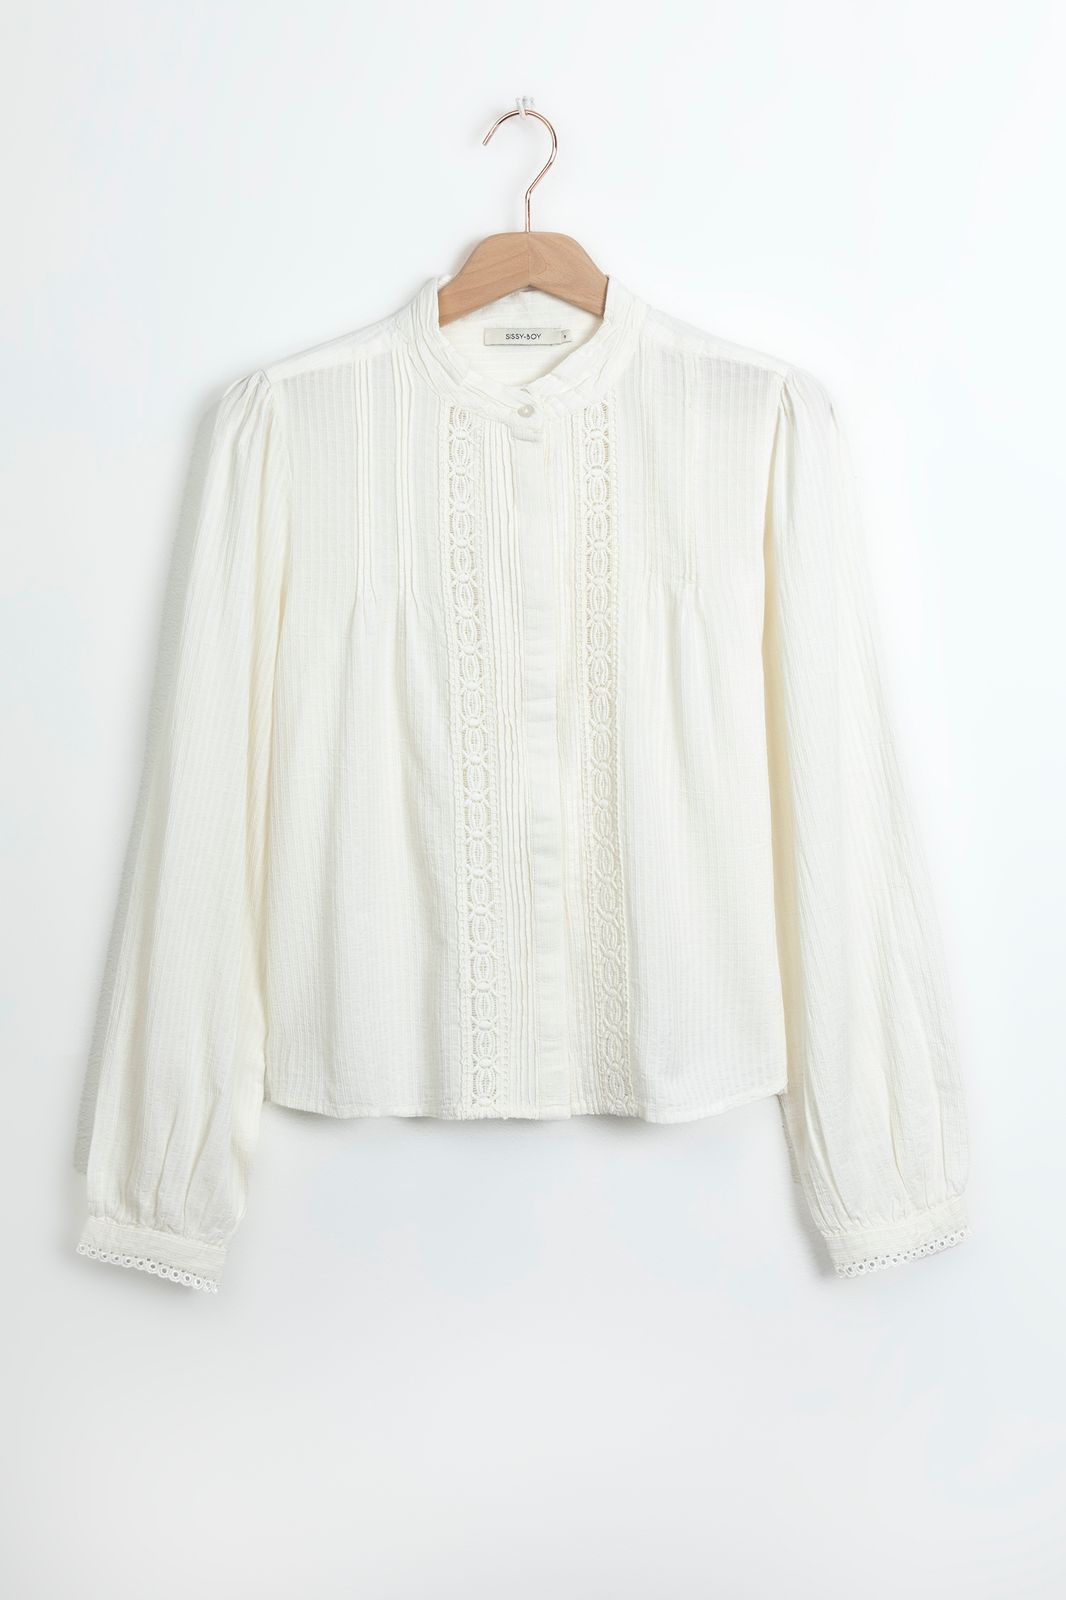 Cropped-Bluse mit Spitze und Biesen - weiß